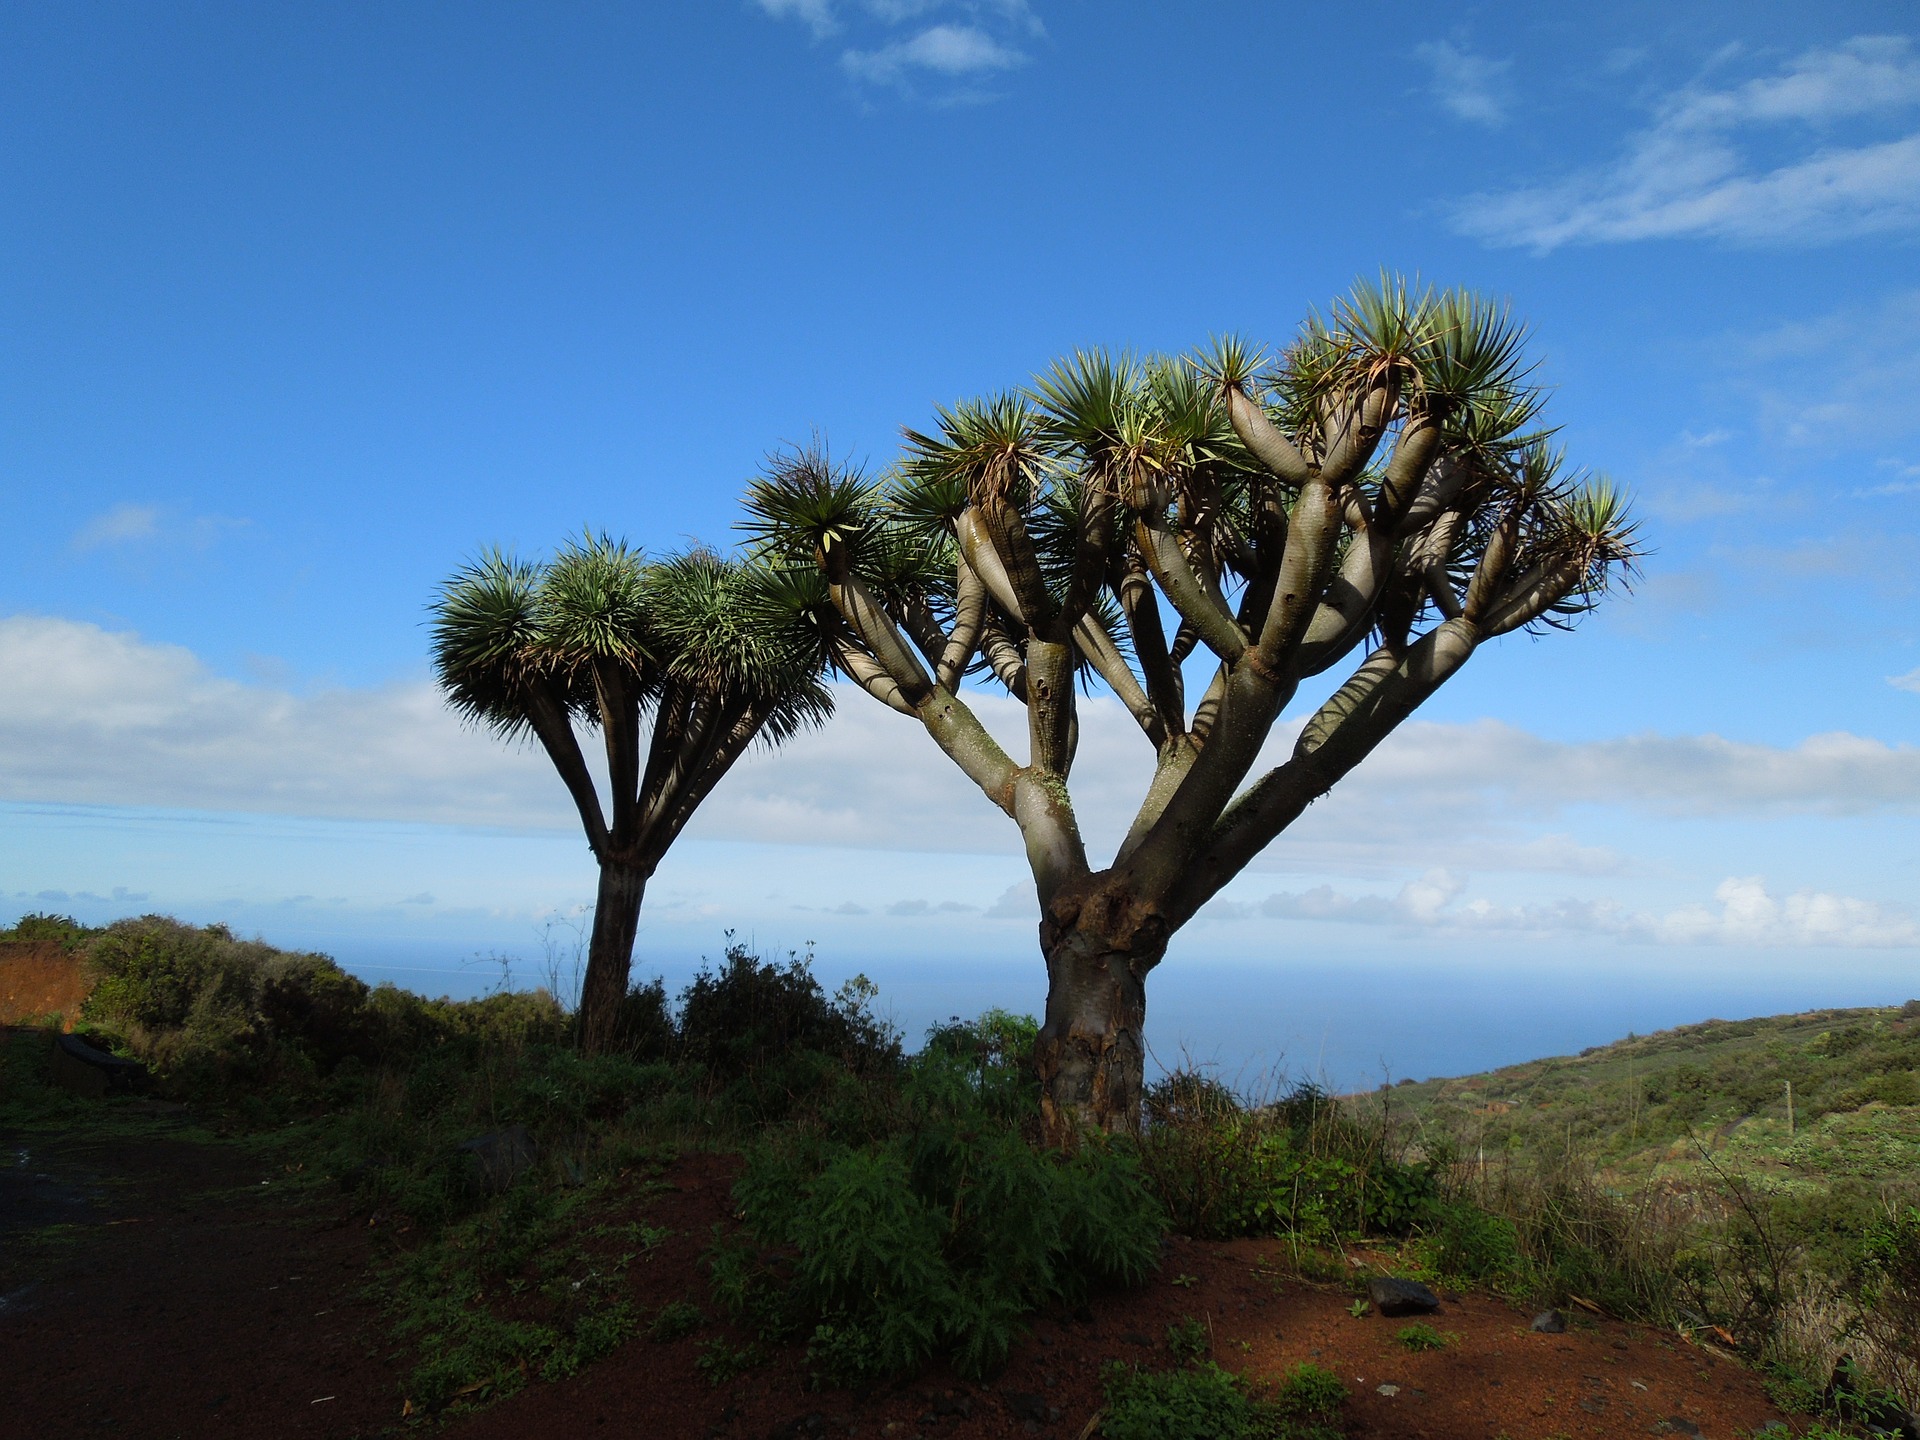 Drachenbaum auf der Insel - hier hat die Landschaft einen afrikansichen Flair auch wenn wir uns auf europäischem Boden befinden